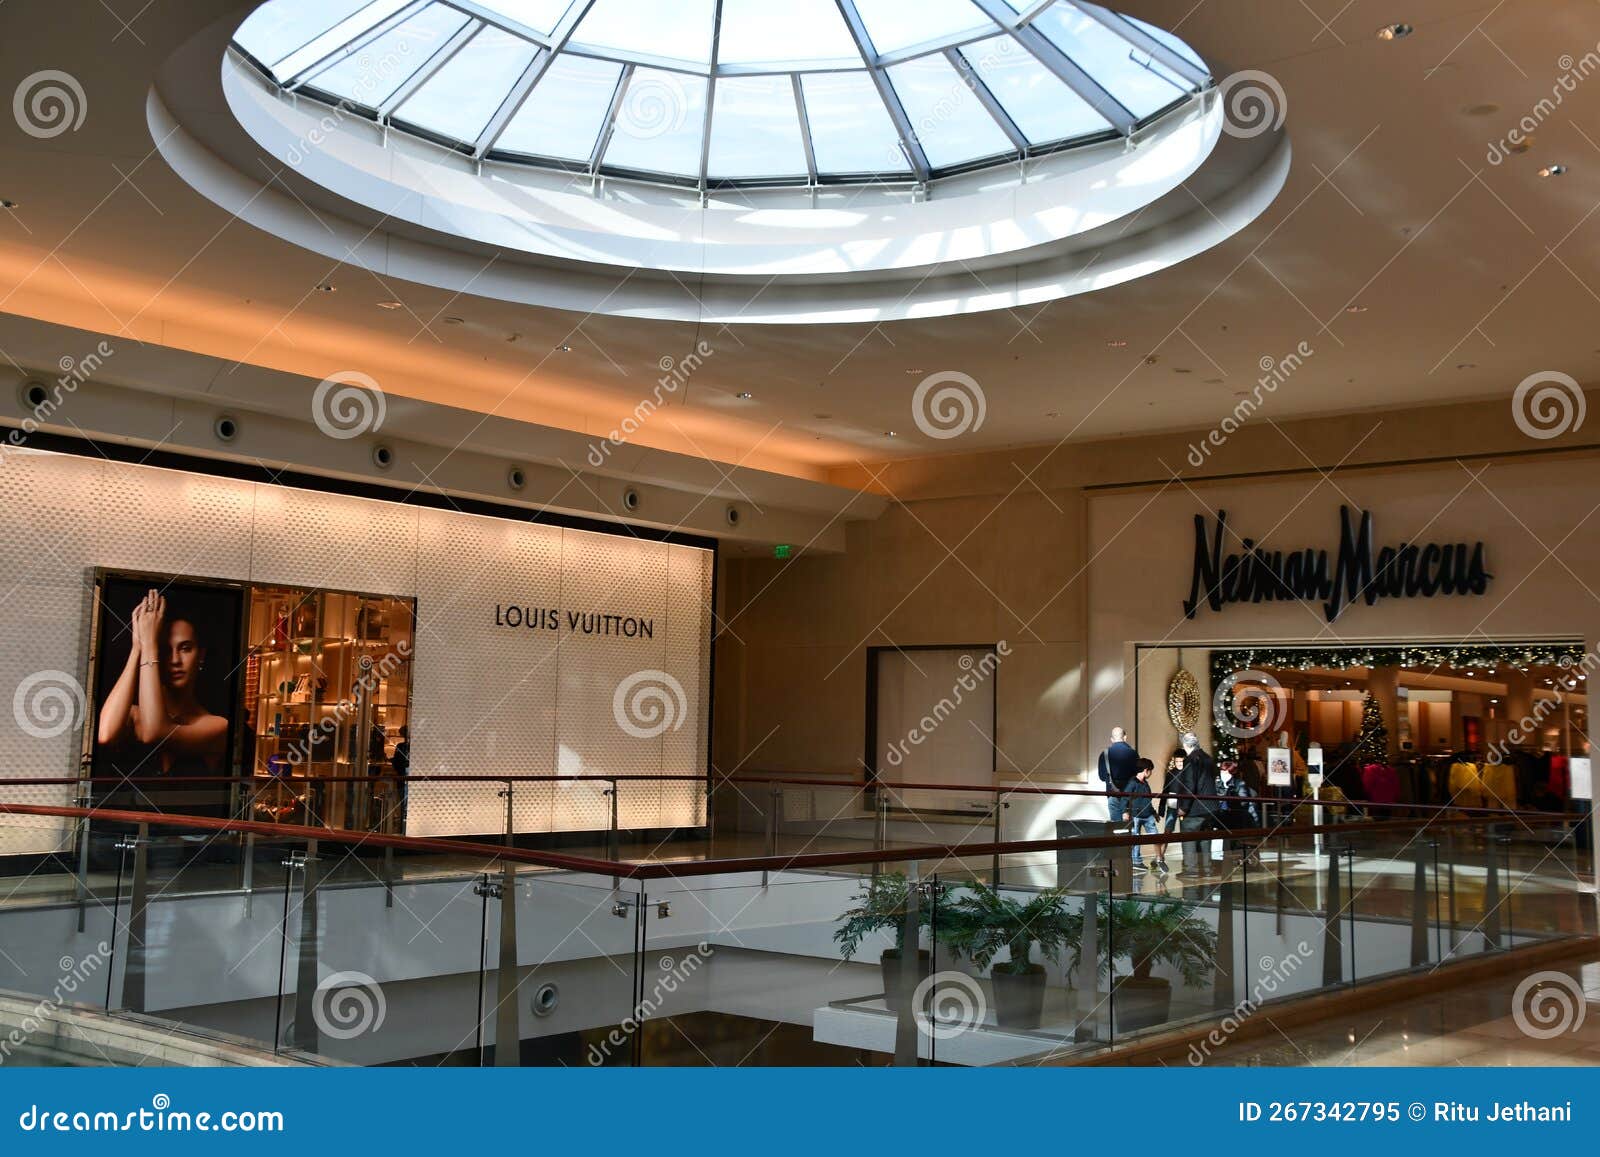 Louis Vuitton Newport Beach Fashion Island Neiman Marcus - Newport Beach,  CA 92660